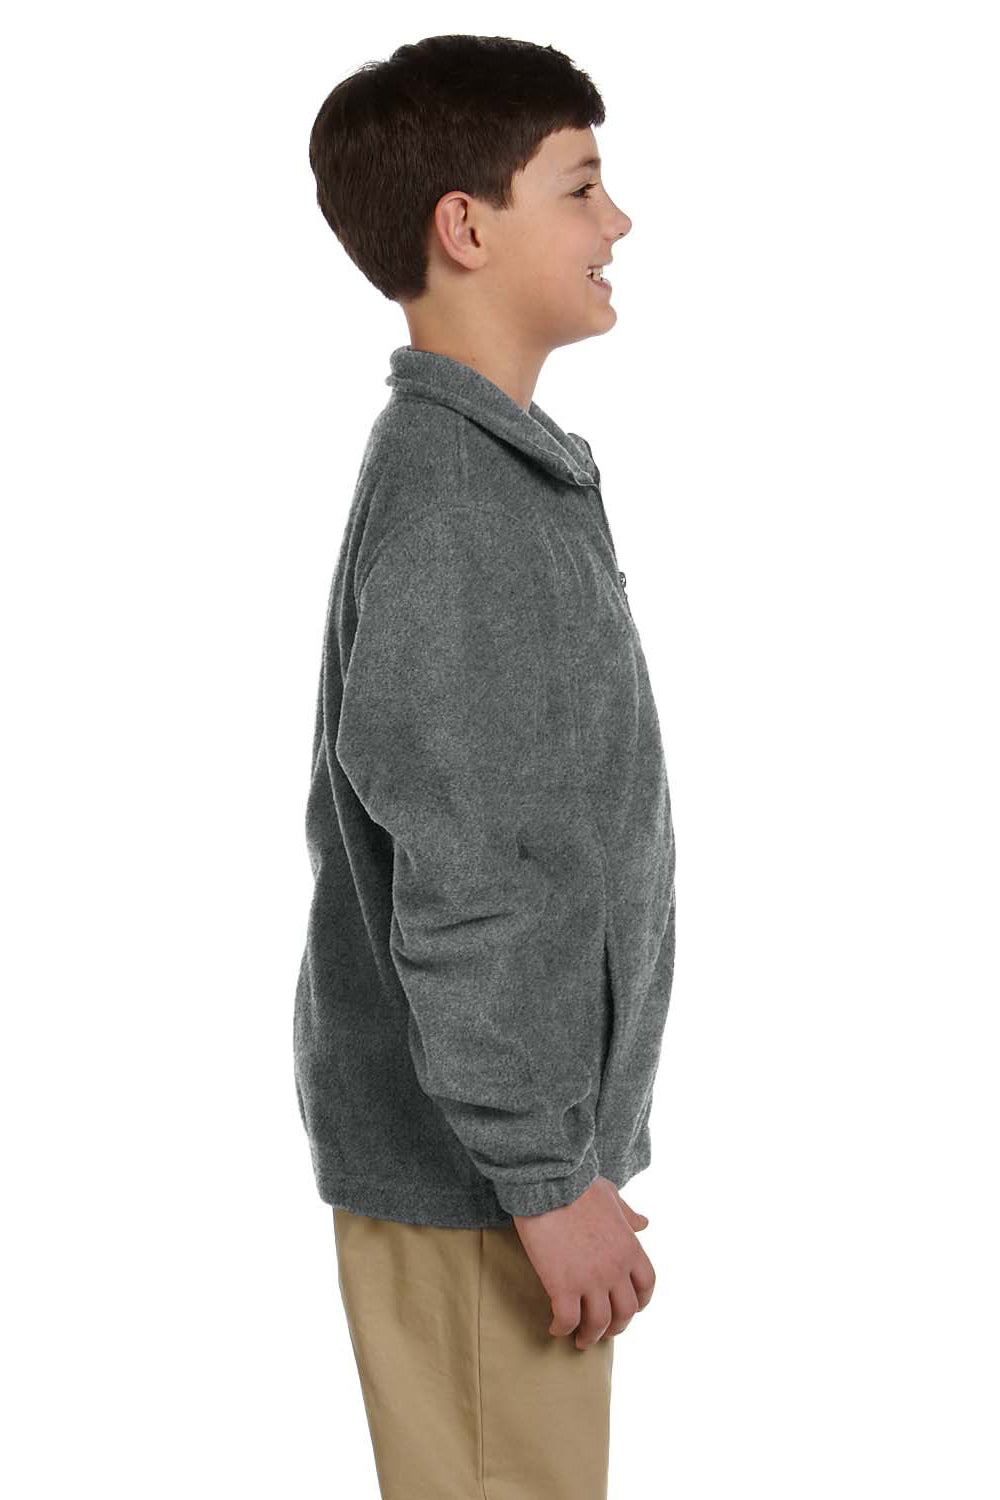 Harriton M990Y Youth Full Zip Fleece Jacket Charcoal Grey Side